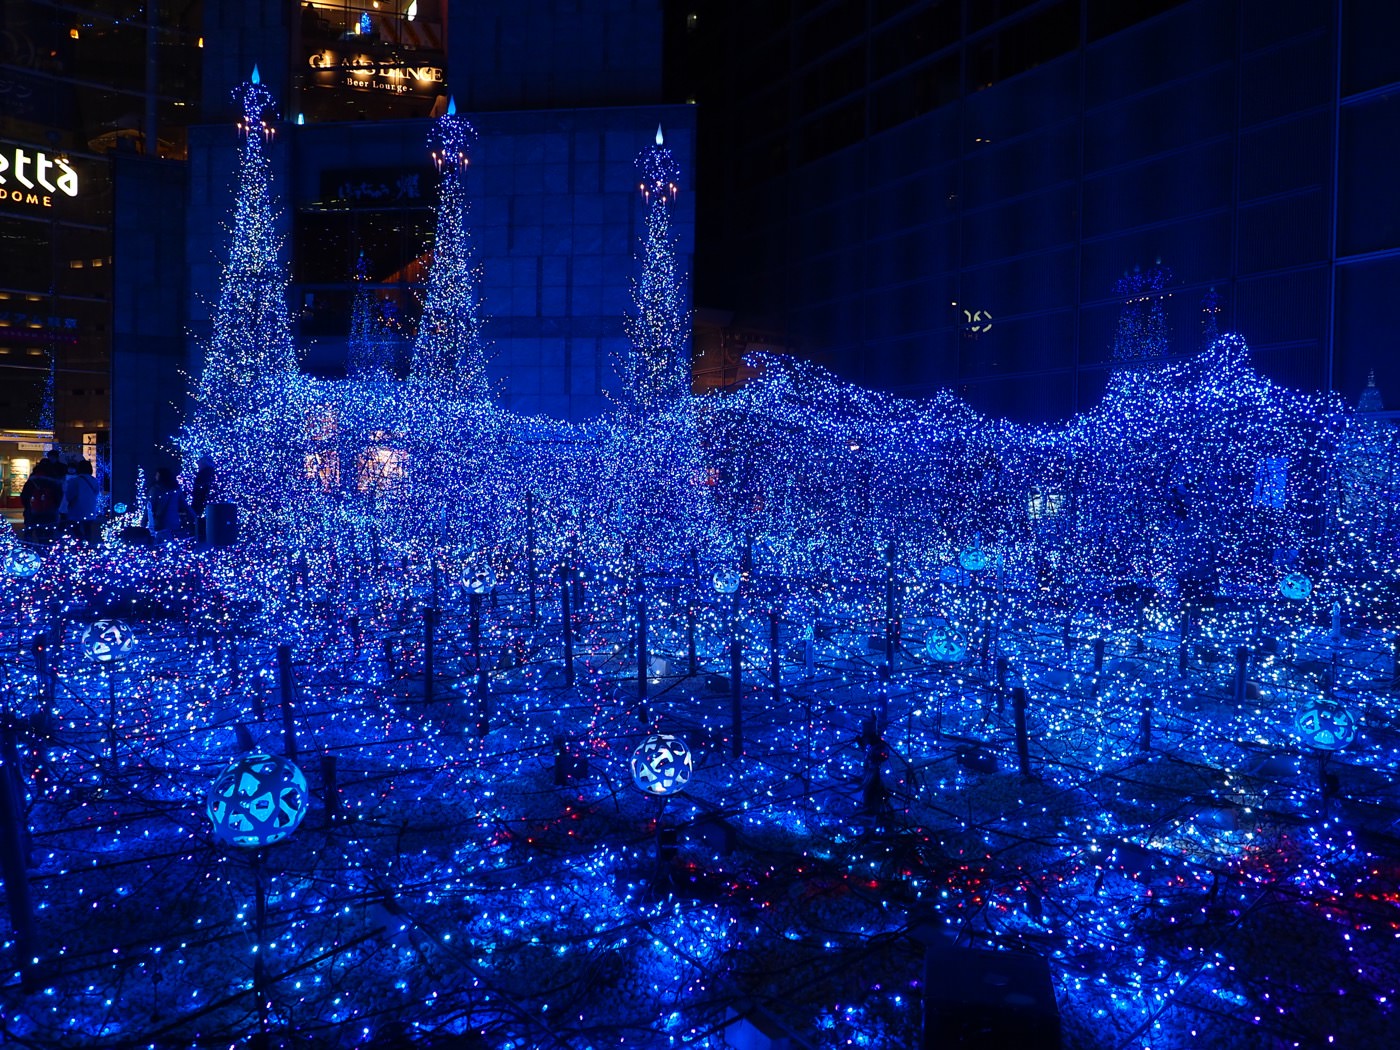 東京景點 聖誕燈飾 汐留 Caretta 海龜廣場 - 一口冒險 Bitesized Adventure